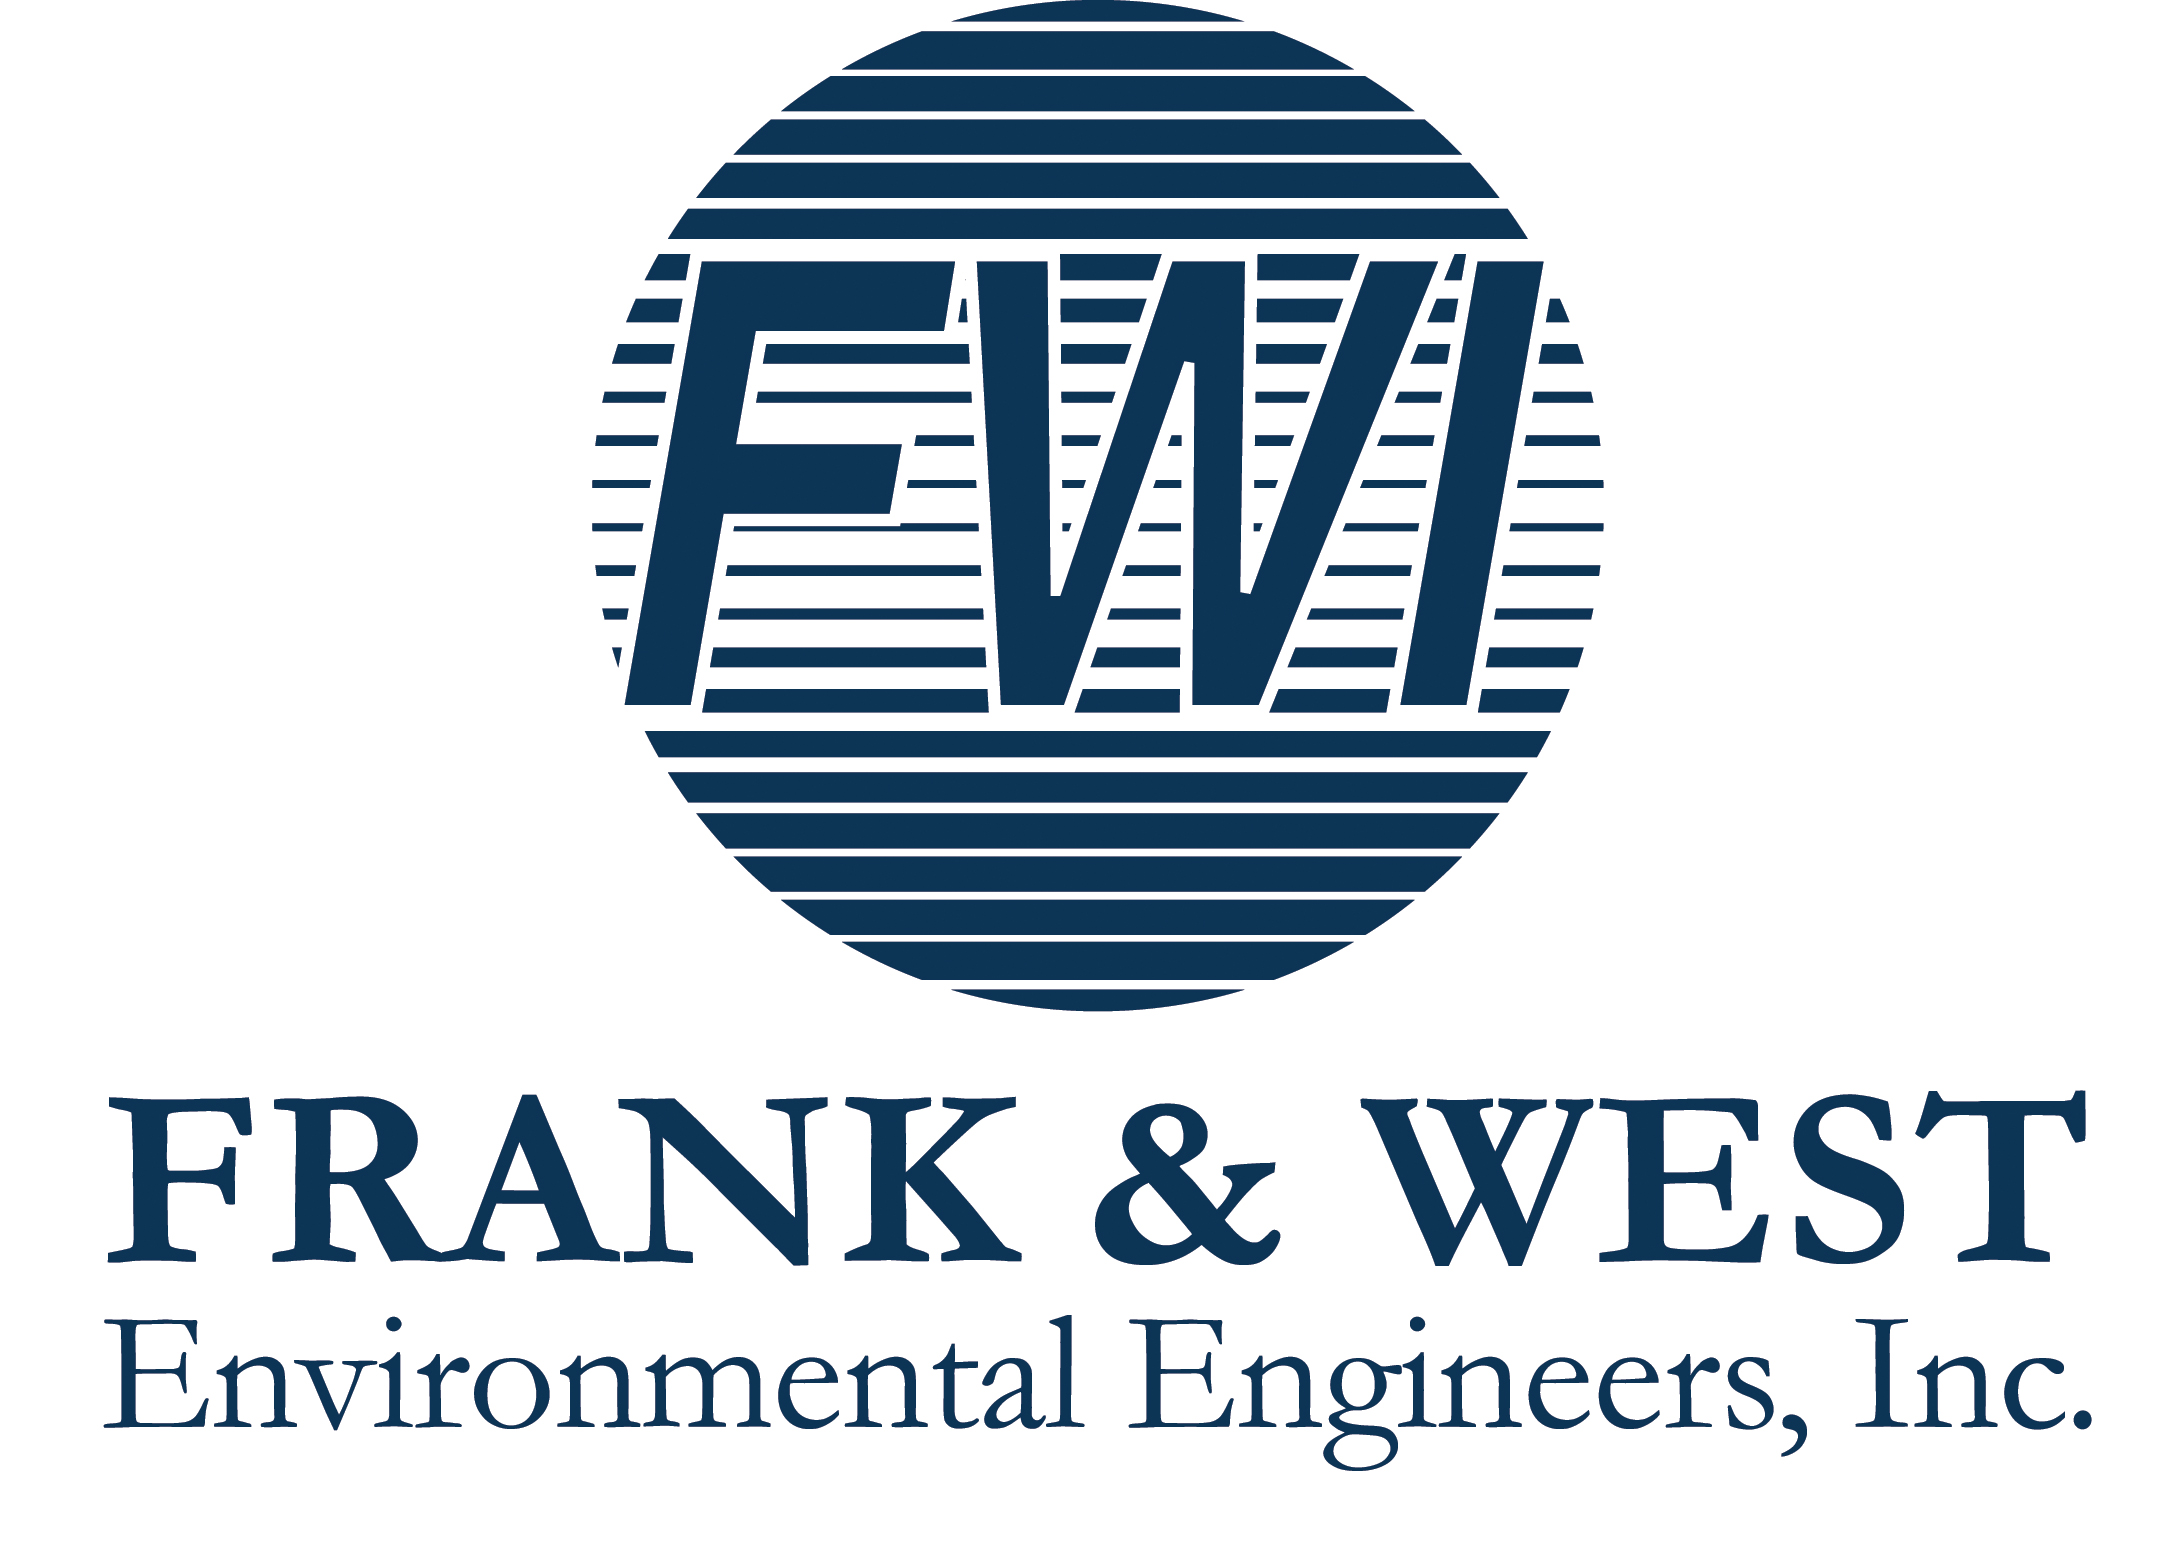 Frank & West Environmental Engineers